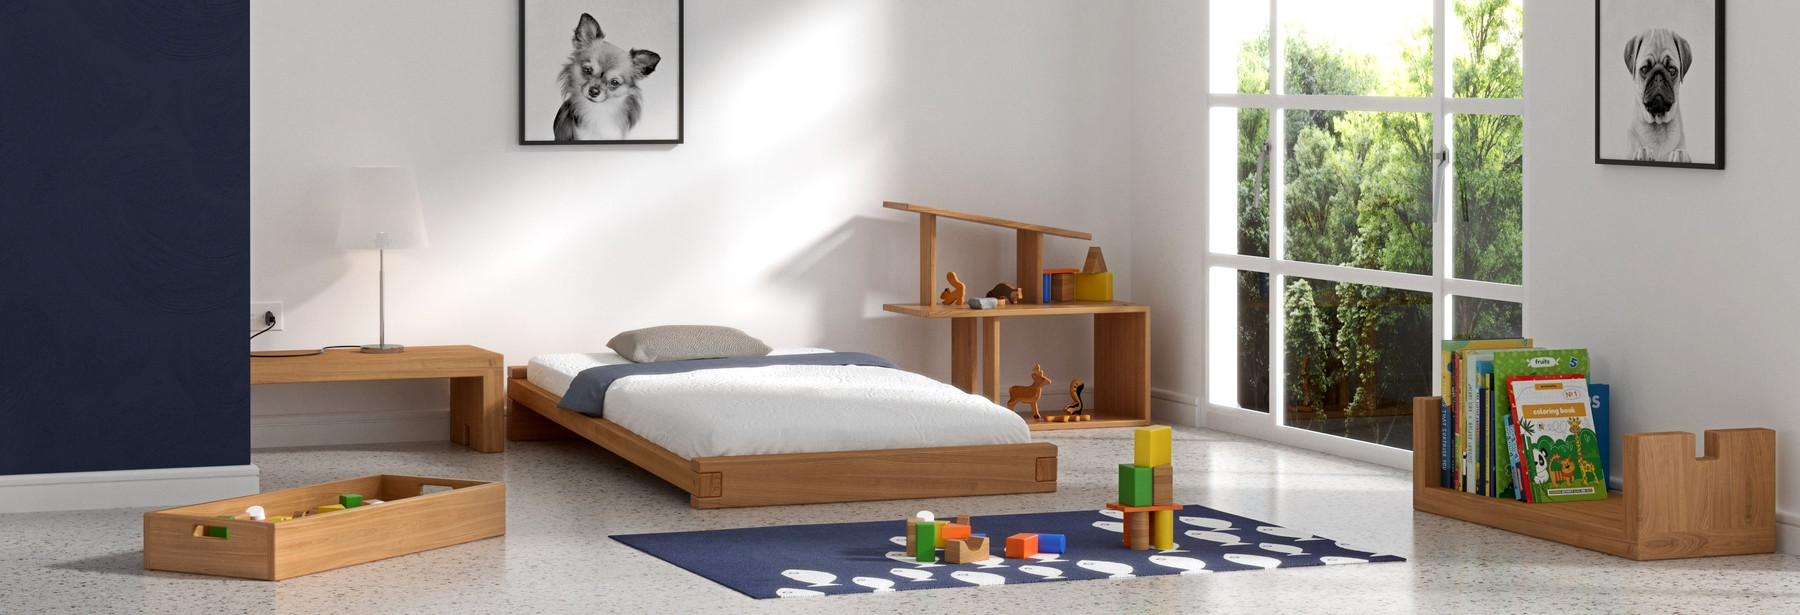 Minimaliste chambre enfant avec des meubles en bois massif